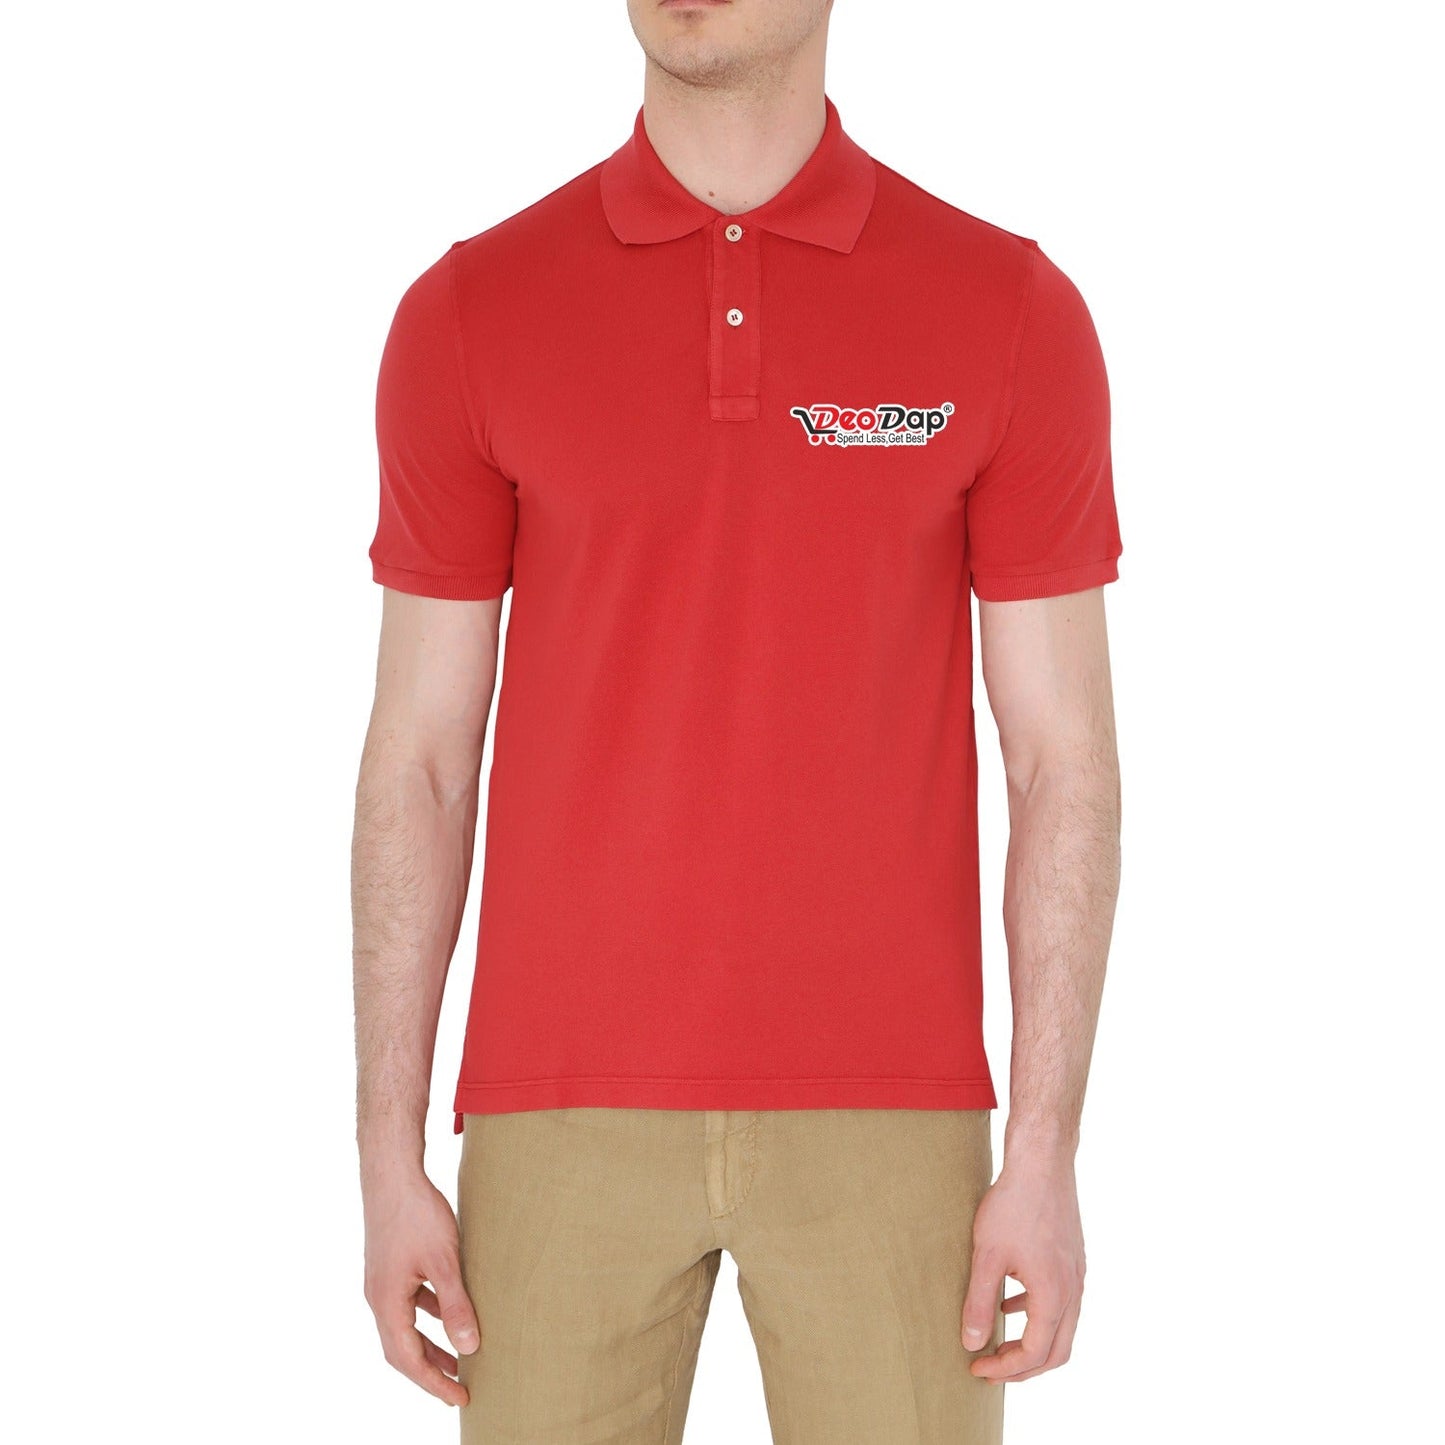 T-Shirt Soft & Premium T-Shirt Deodap Uniform T-Shirt (1 Pc )